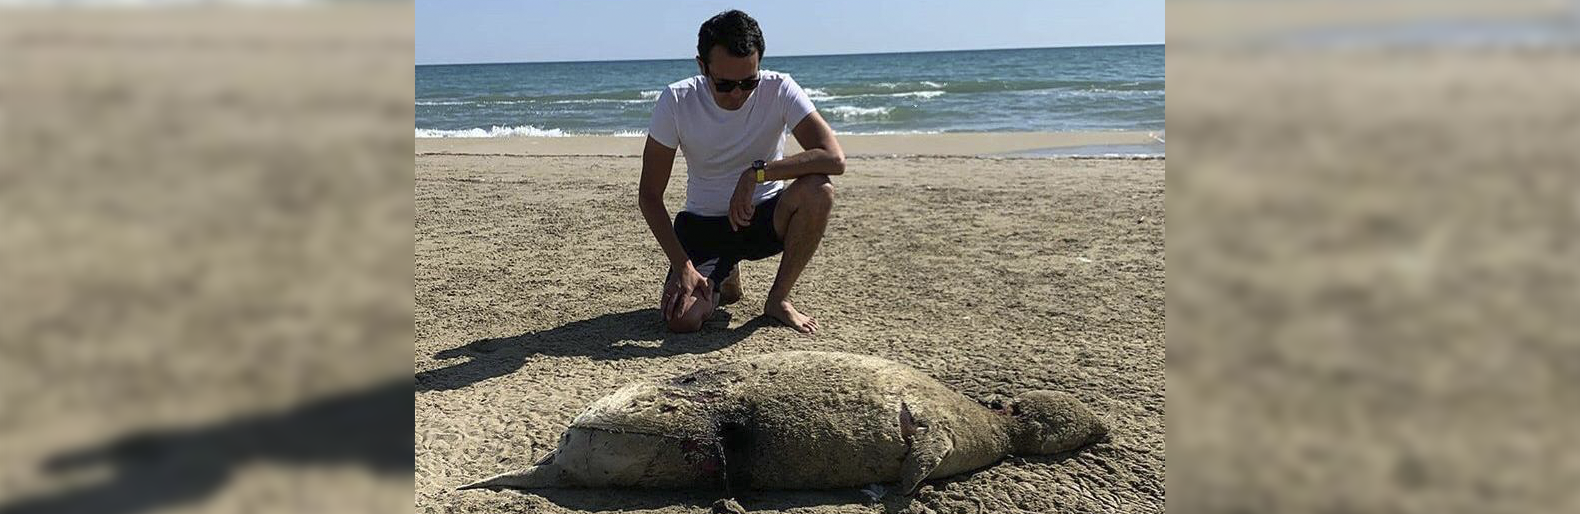 Таинственный певец на берег выброшен грозою. В кайспис Каспийском море вытащили русалку. В Дагестане погибло 2500 тюленей. Российские туристы погладили тюленя и получили огромный штраф.